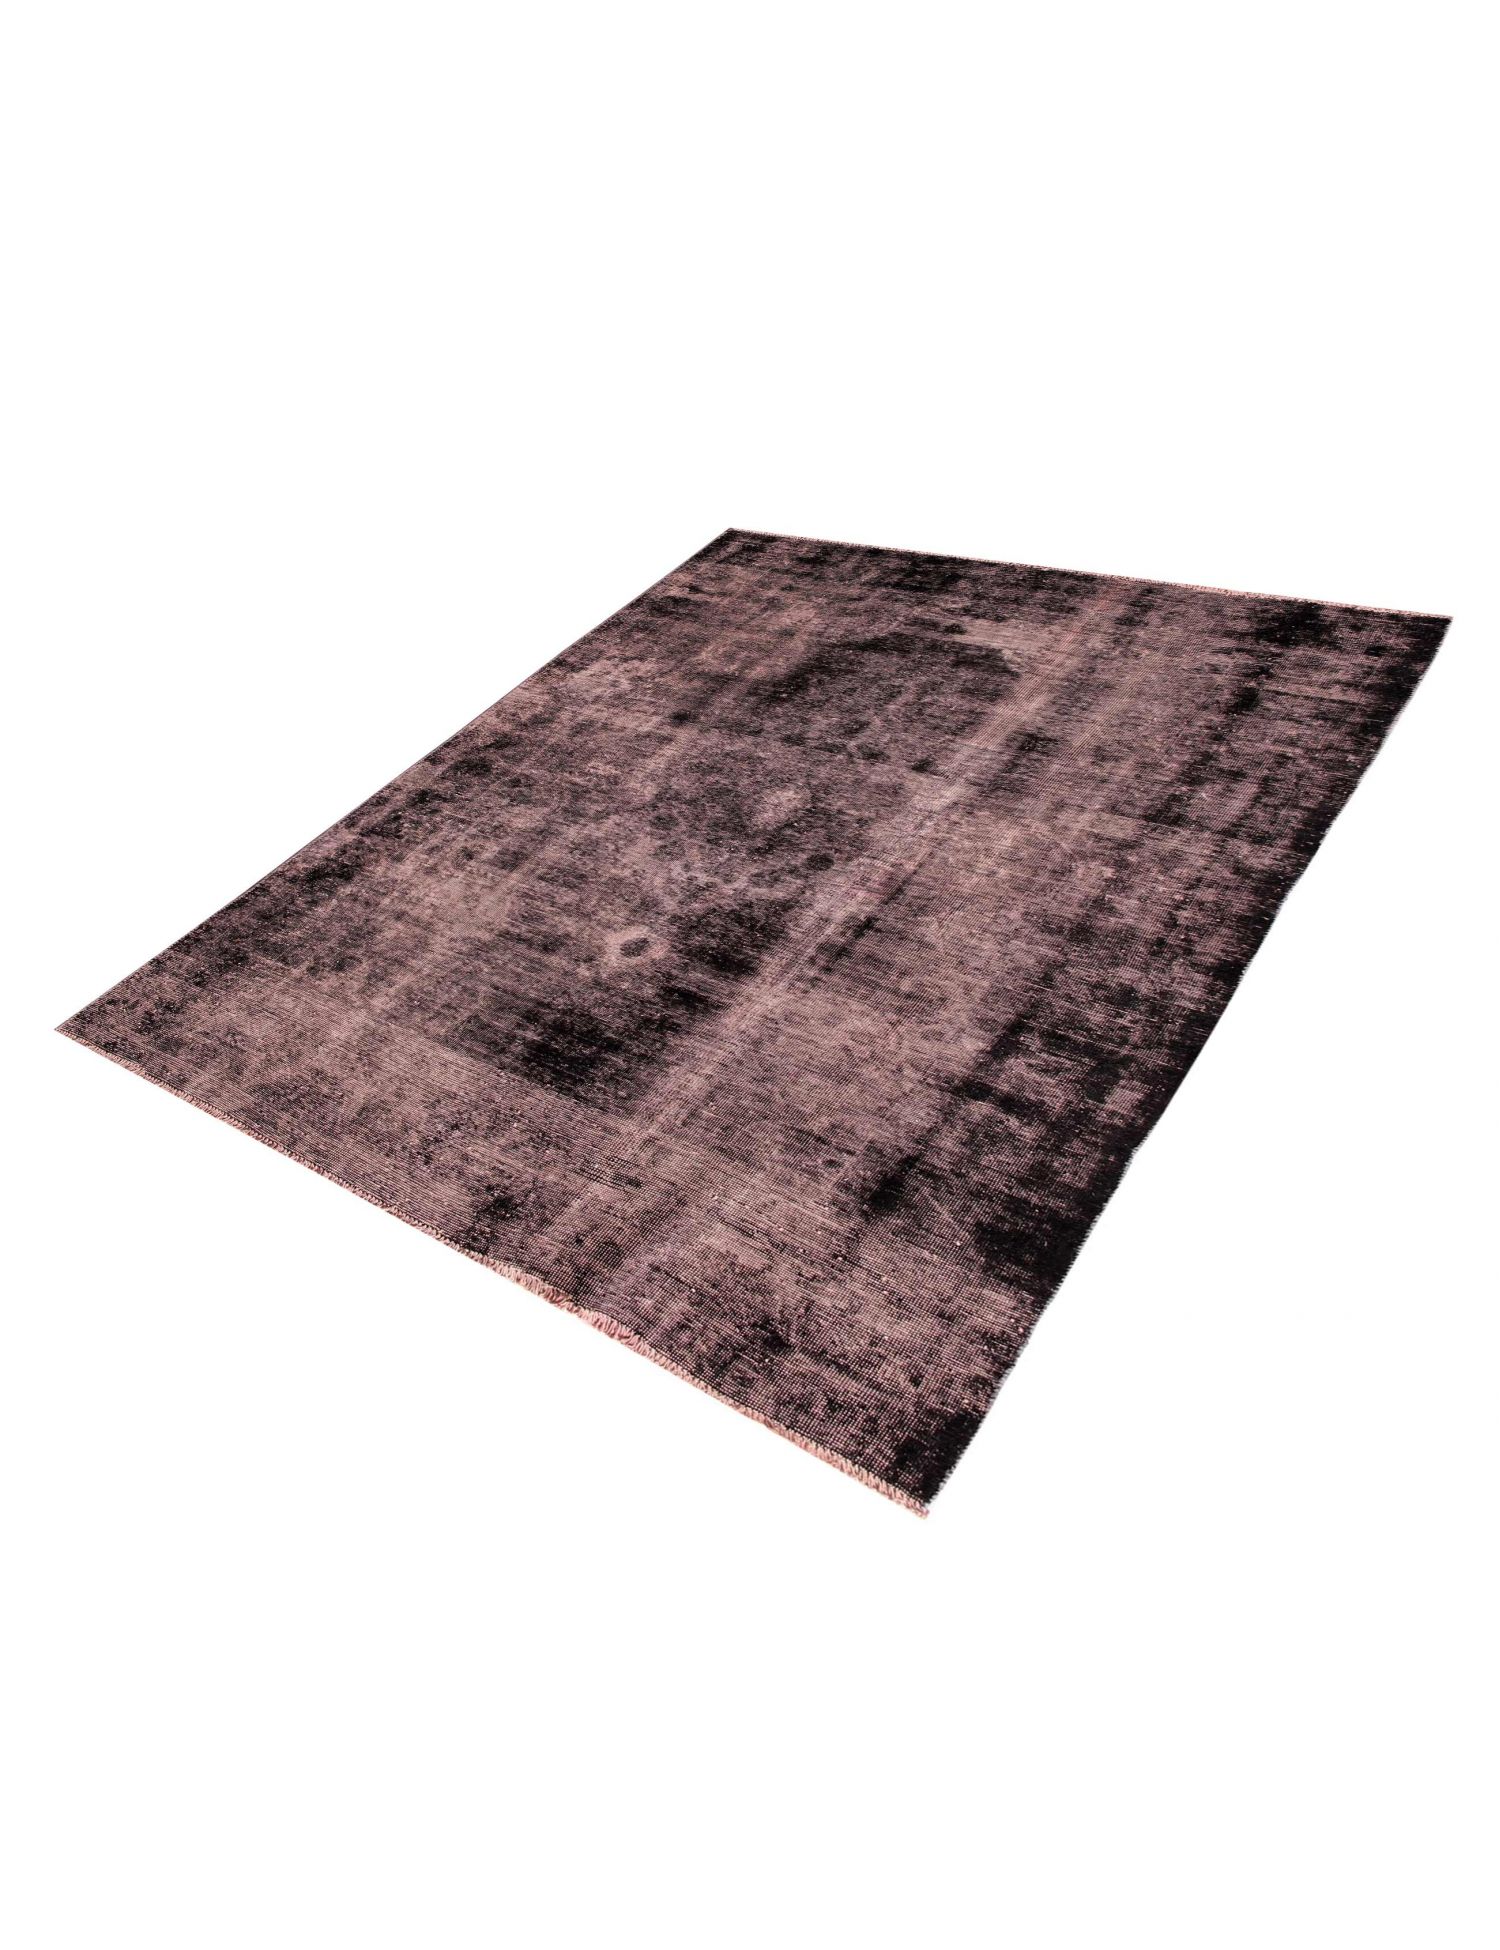 Persian Vintage Carpet  black <br/>268 x 183 cm